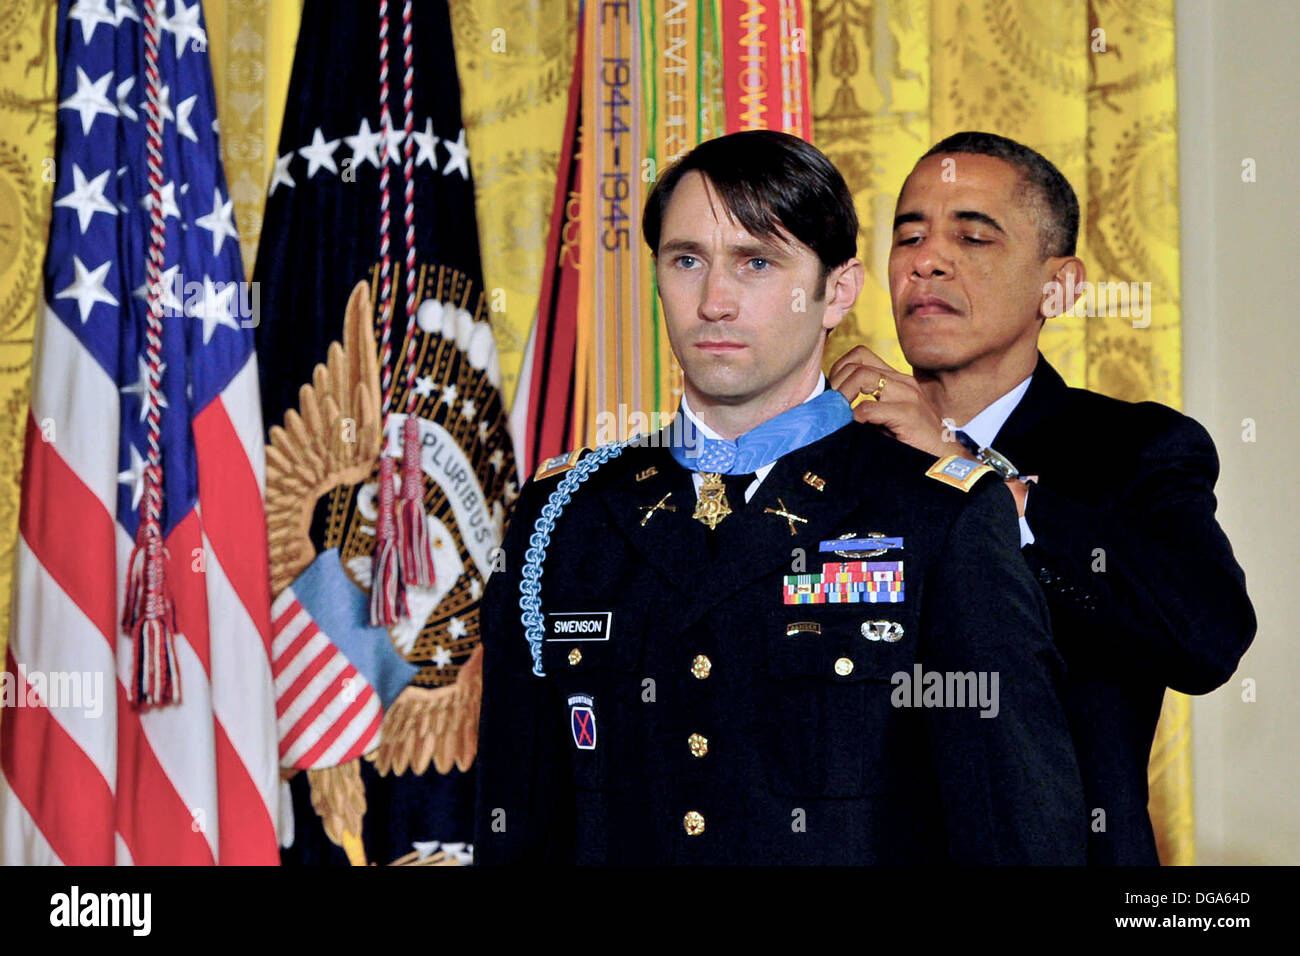 US-Präsident Barack Obama während einer Zeremonie im East Room des weißen Hauses 15. Oktober 2013 in Washington, DC ehemalige Army Captain William D. Swenson mit der Medal Of Honor präsentiert. Die Medal Of Honor ist die höchste militärische Auszeichnung des Landes. Stockfoto